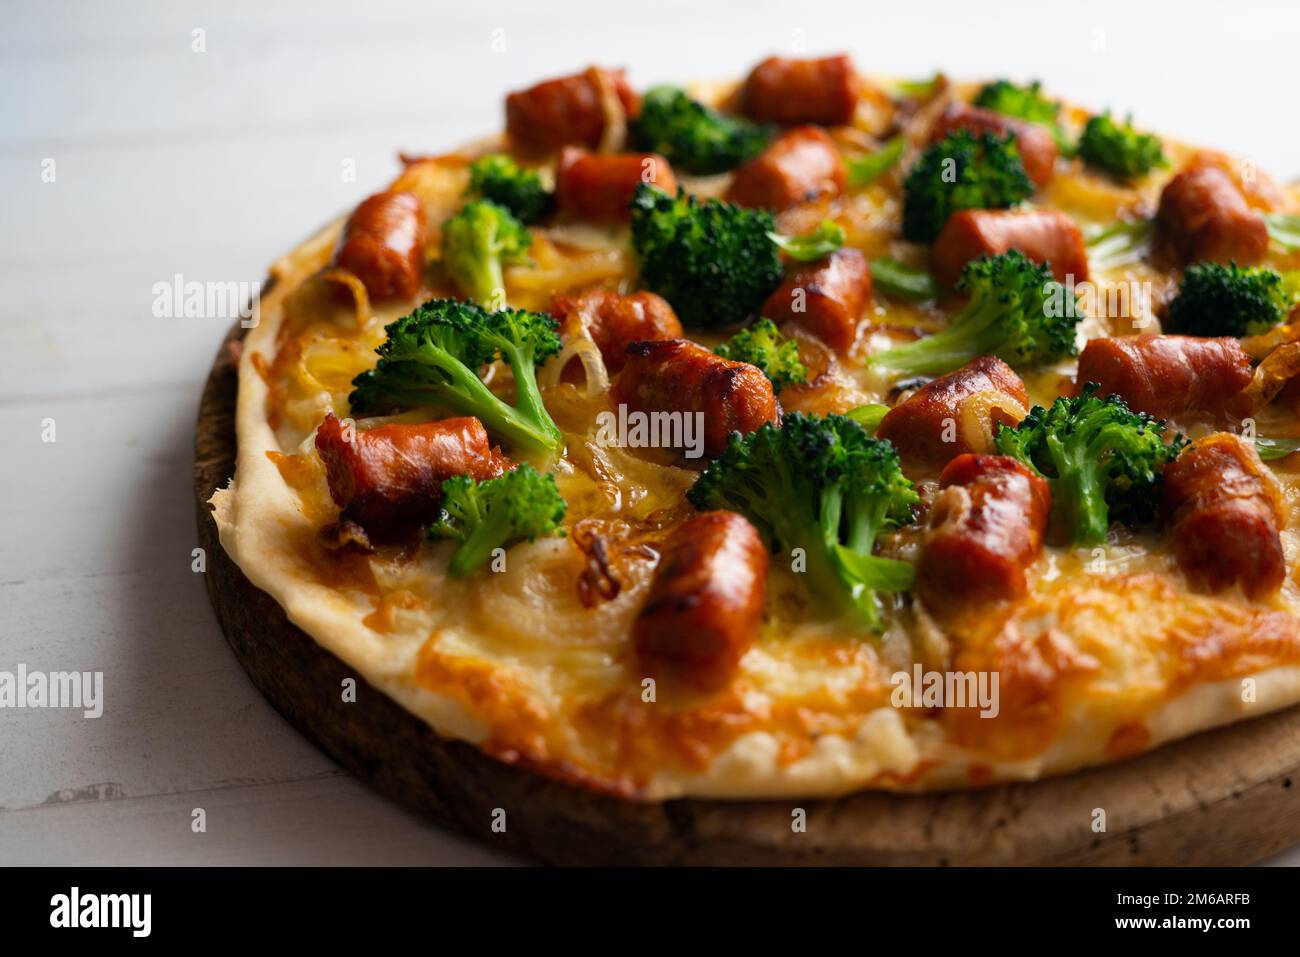 Pizza au salami Chistorra. Pizza napolitaine préparée avec du salami, du fromage et des légumes cuits au four. Recette végétarienne italienne. Banque D'Images